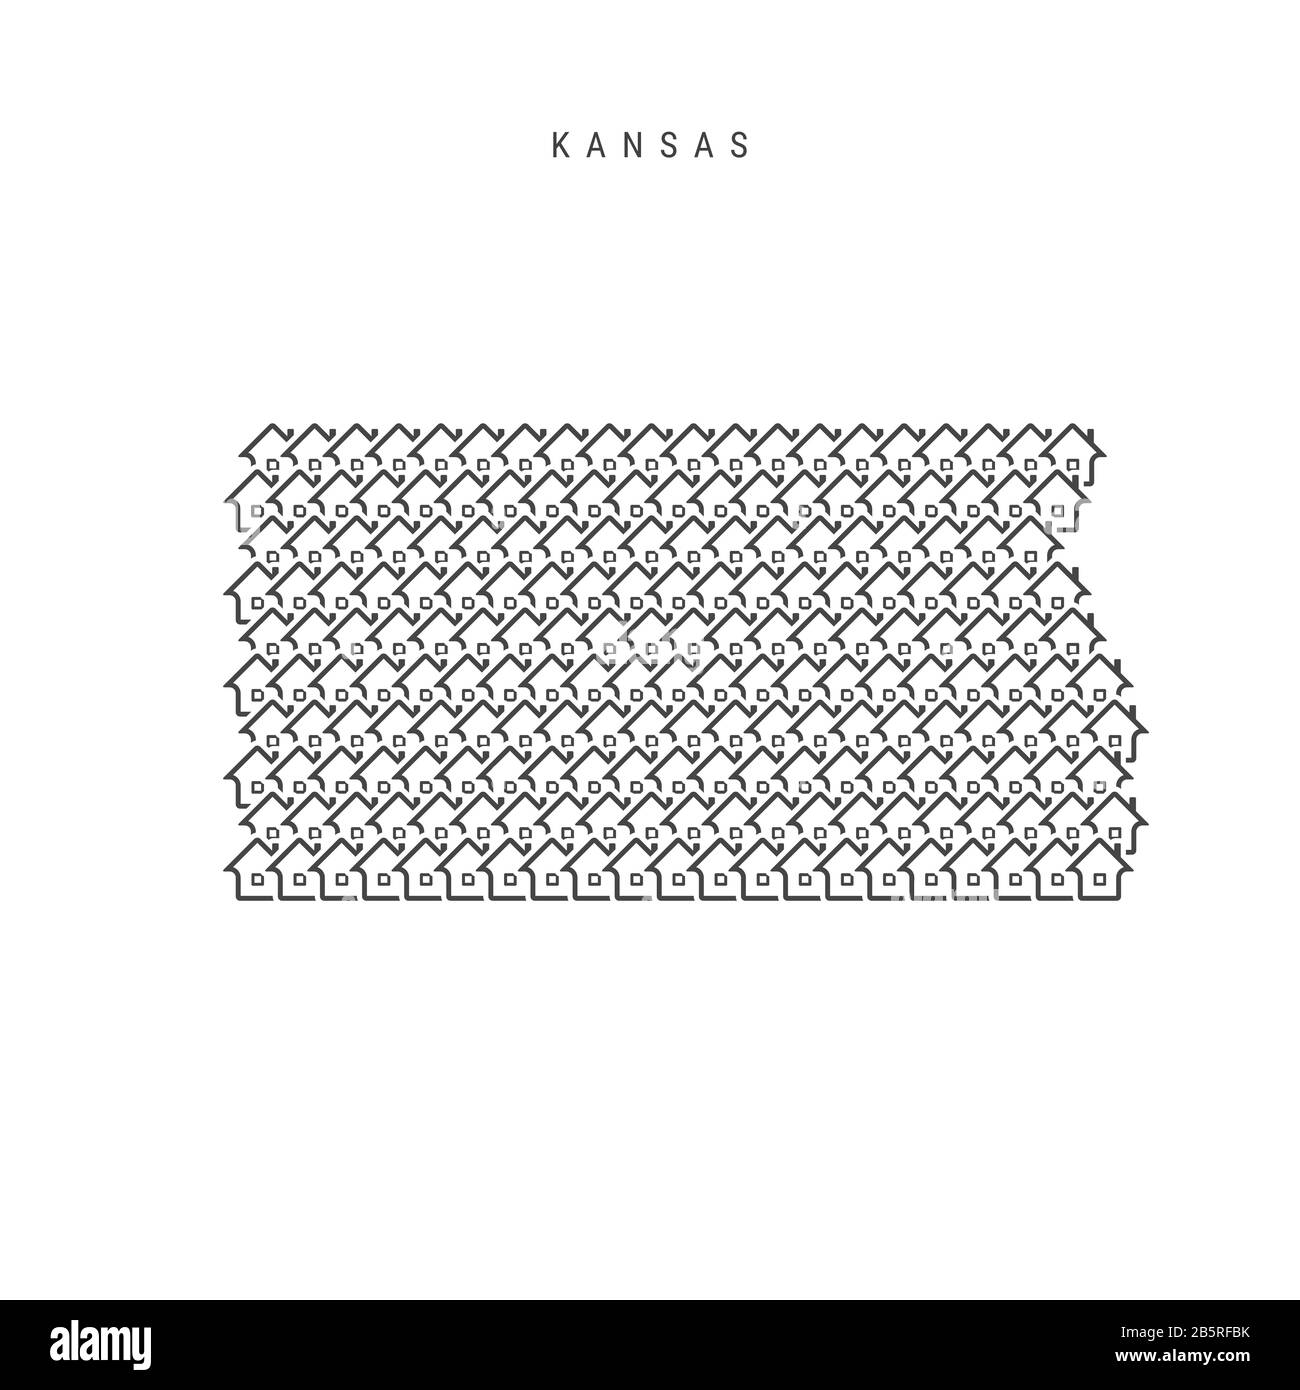 Immobili in Kansas. Icone di case a forma di una mappa del Kansas. Concetto creativo per un'agenzia immobiliare. Illustrazione. Foto Stock